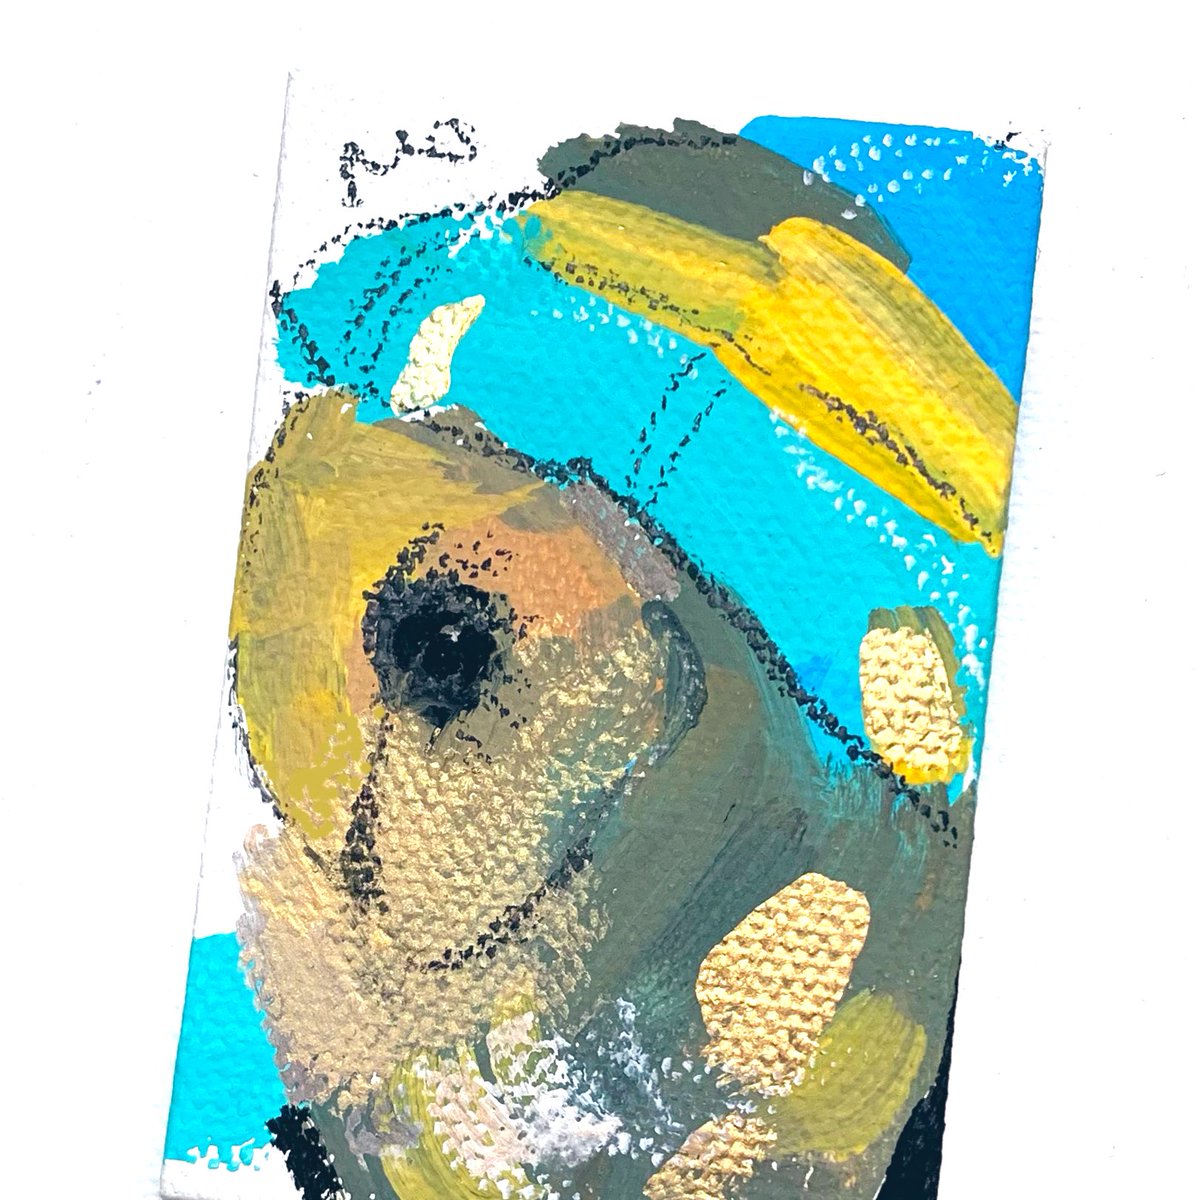 「ブラックメンフクロウの ニット帽ブーちゃん、描きました #おのぼりhoho6 に」|オクムラミチヨのイラスト